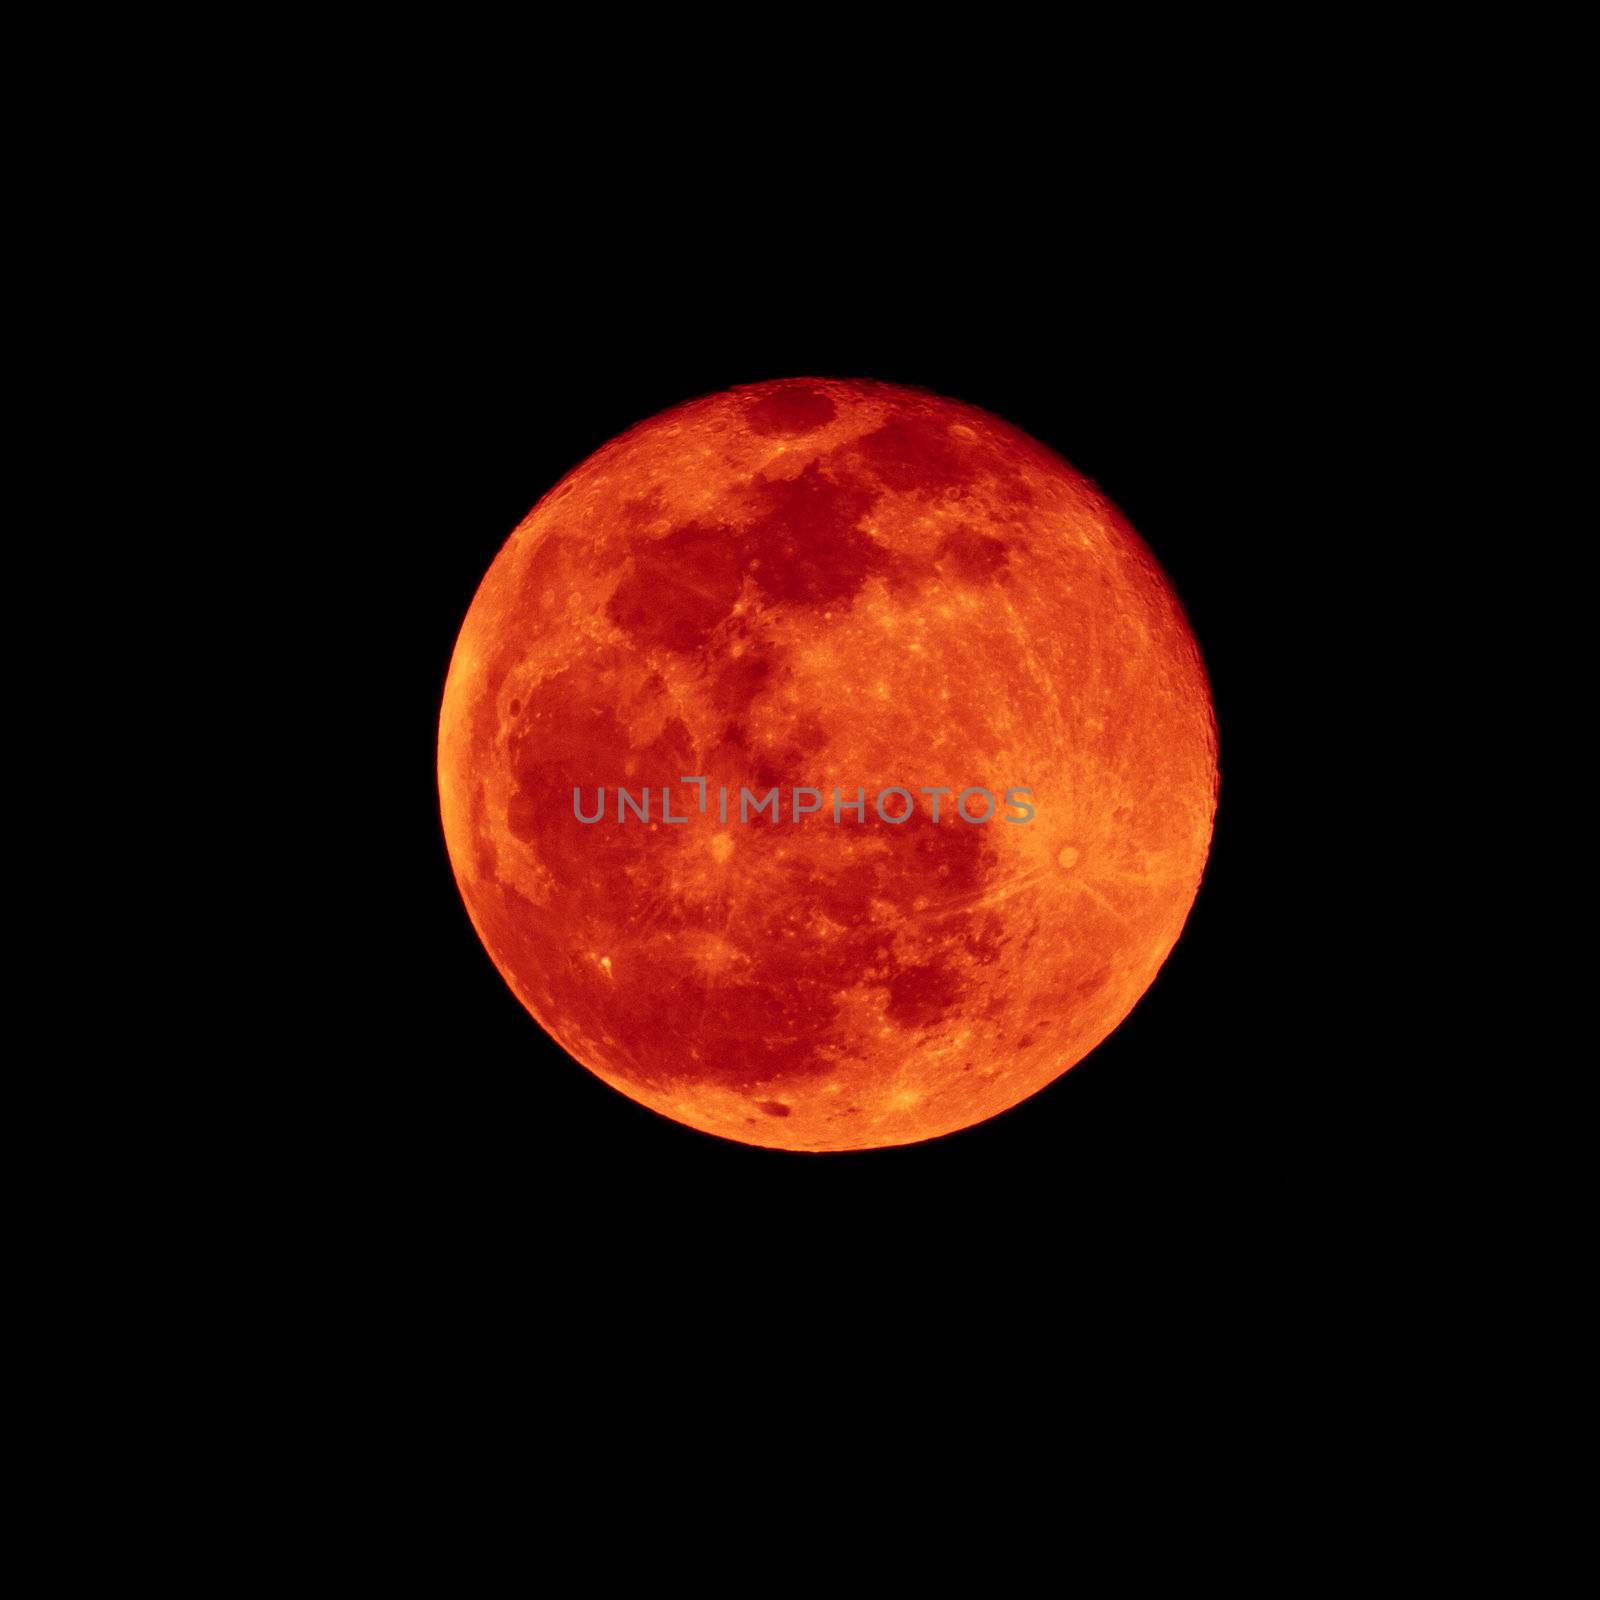 Red brick of Lunar eclipse by Suriyaphoto